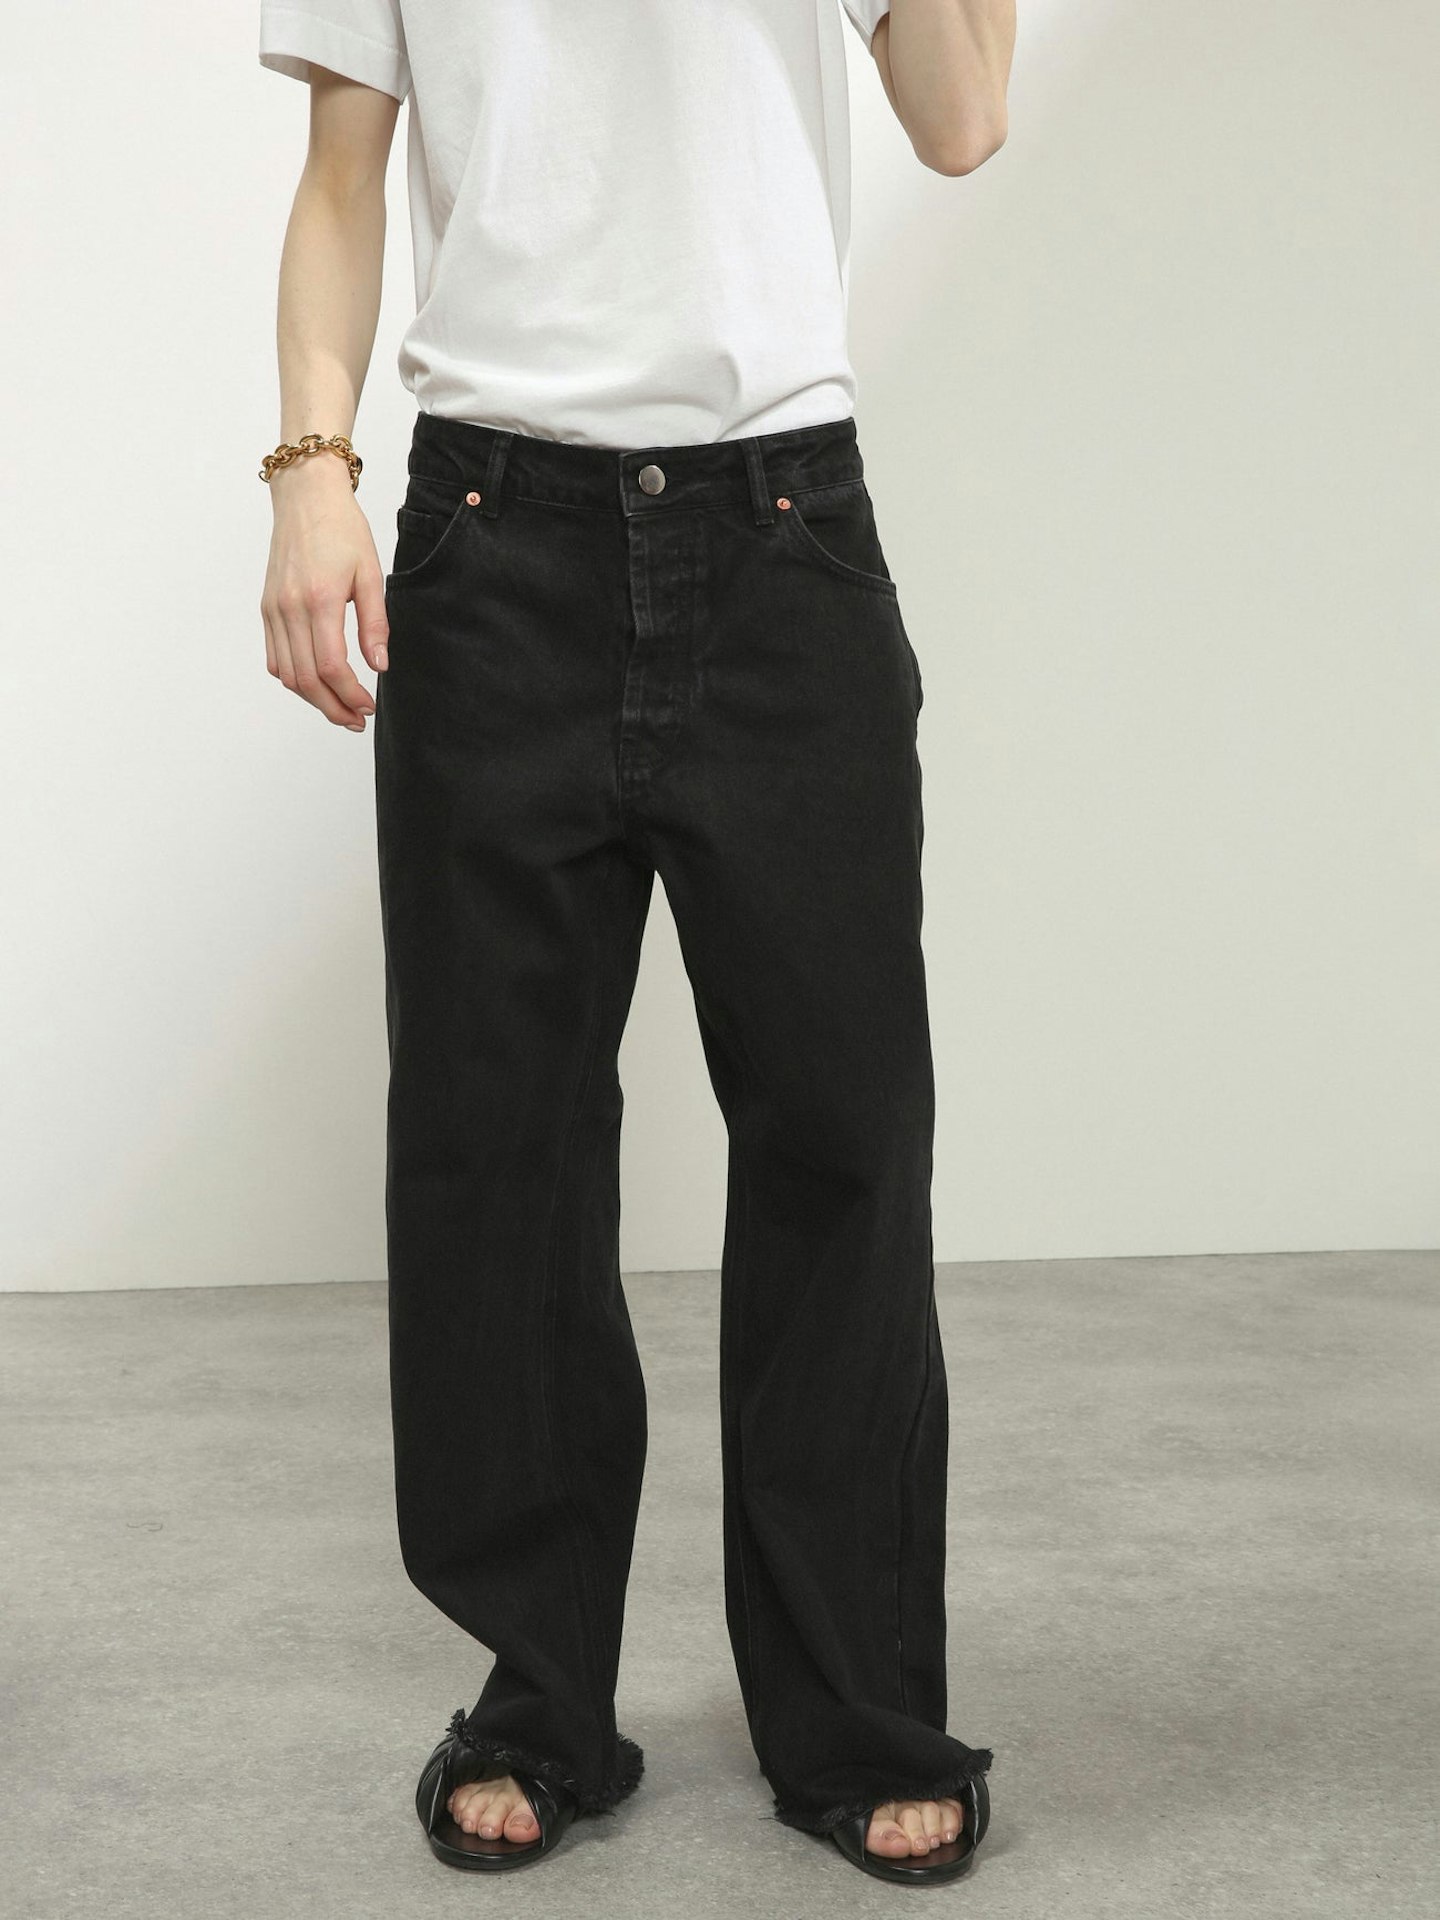 Raey, Gait organic-cotton super wide-leg jeans, £140